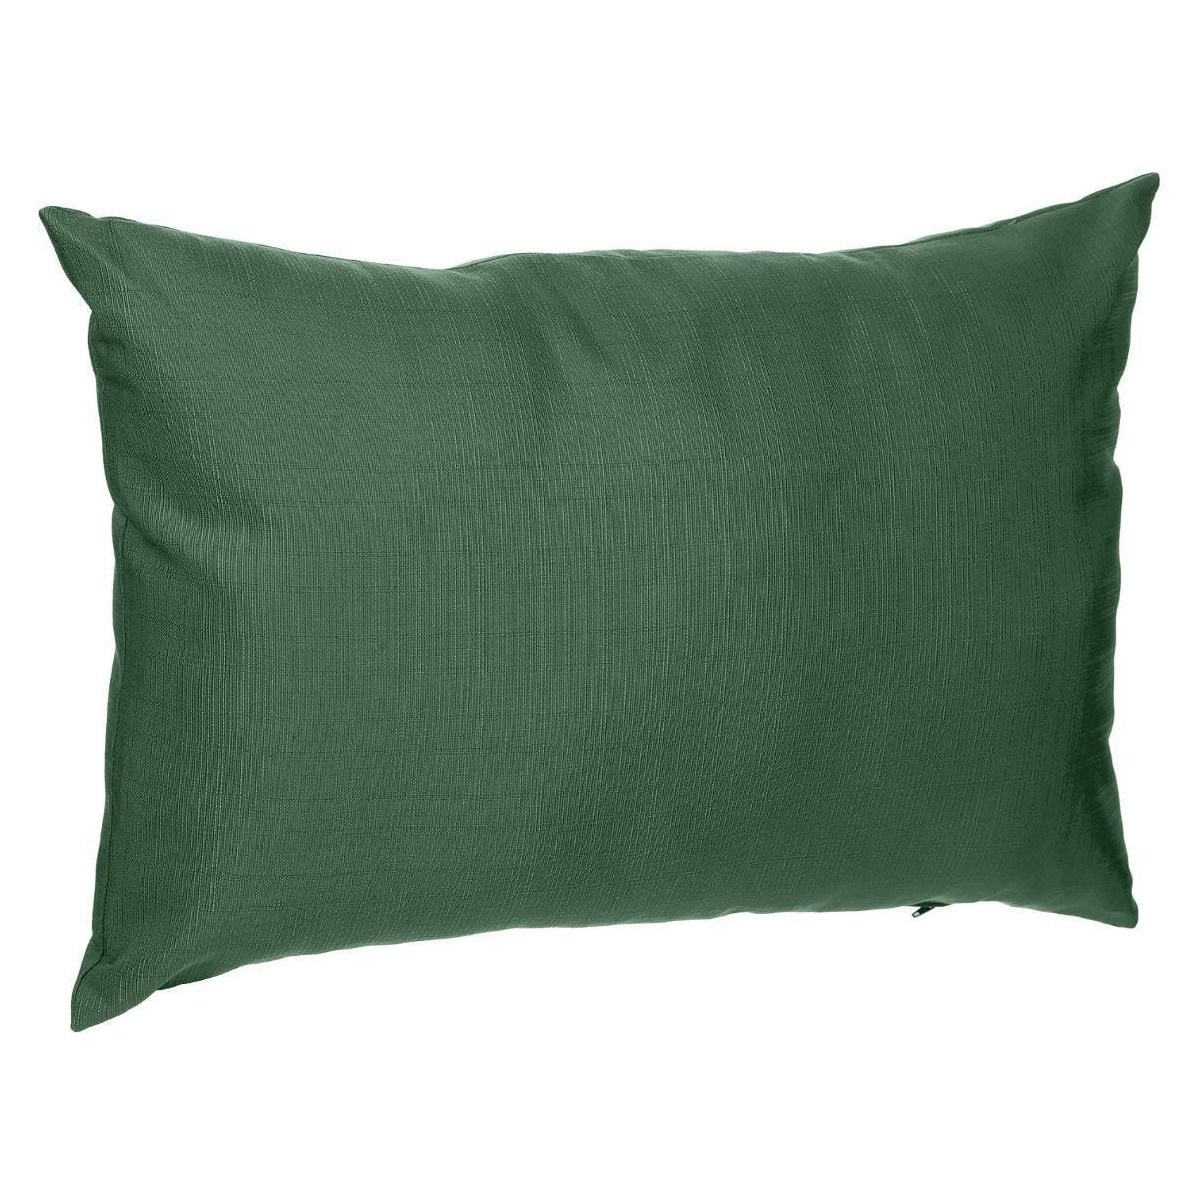 Bank-sier-tuin kussens voor binnen en buiten in de kleur olijf groen 30 x 50 x 10 cm